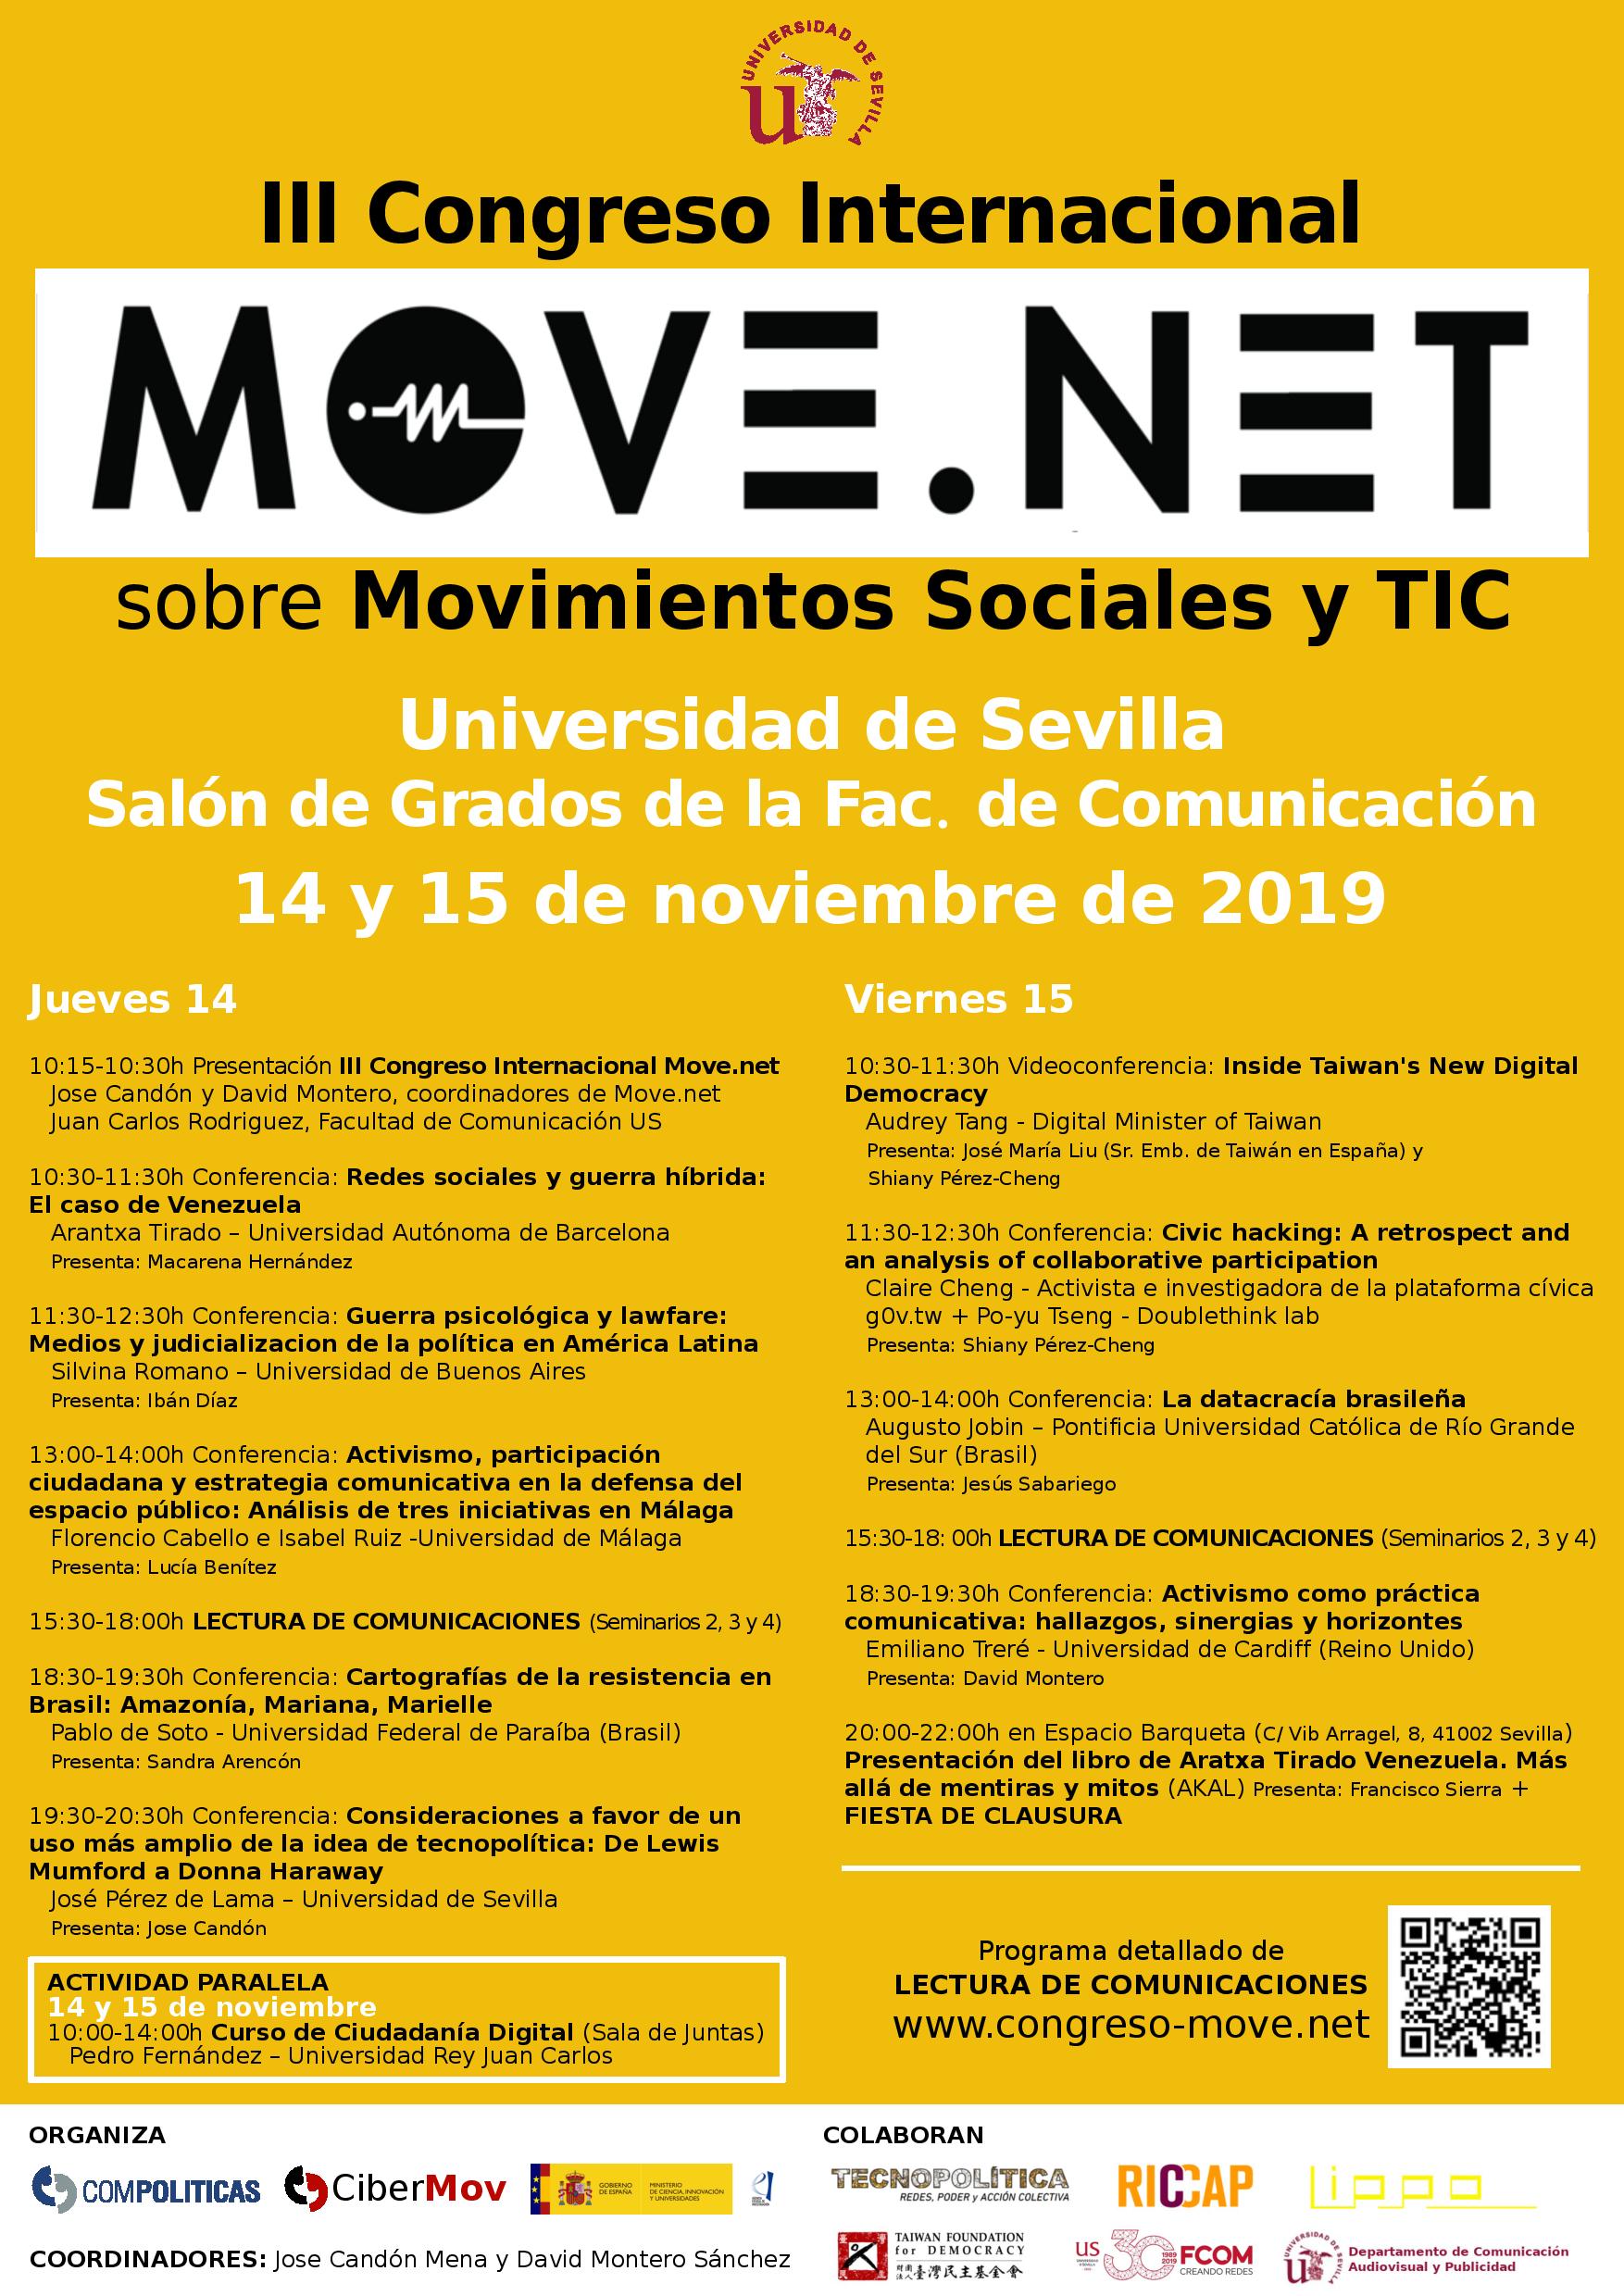 III Congreso Movenet en la Facultad de Comunicación de la Universidad de Sevilla